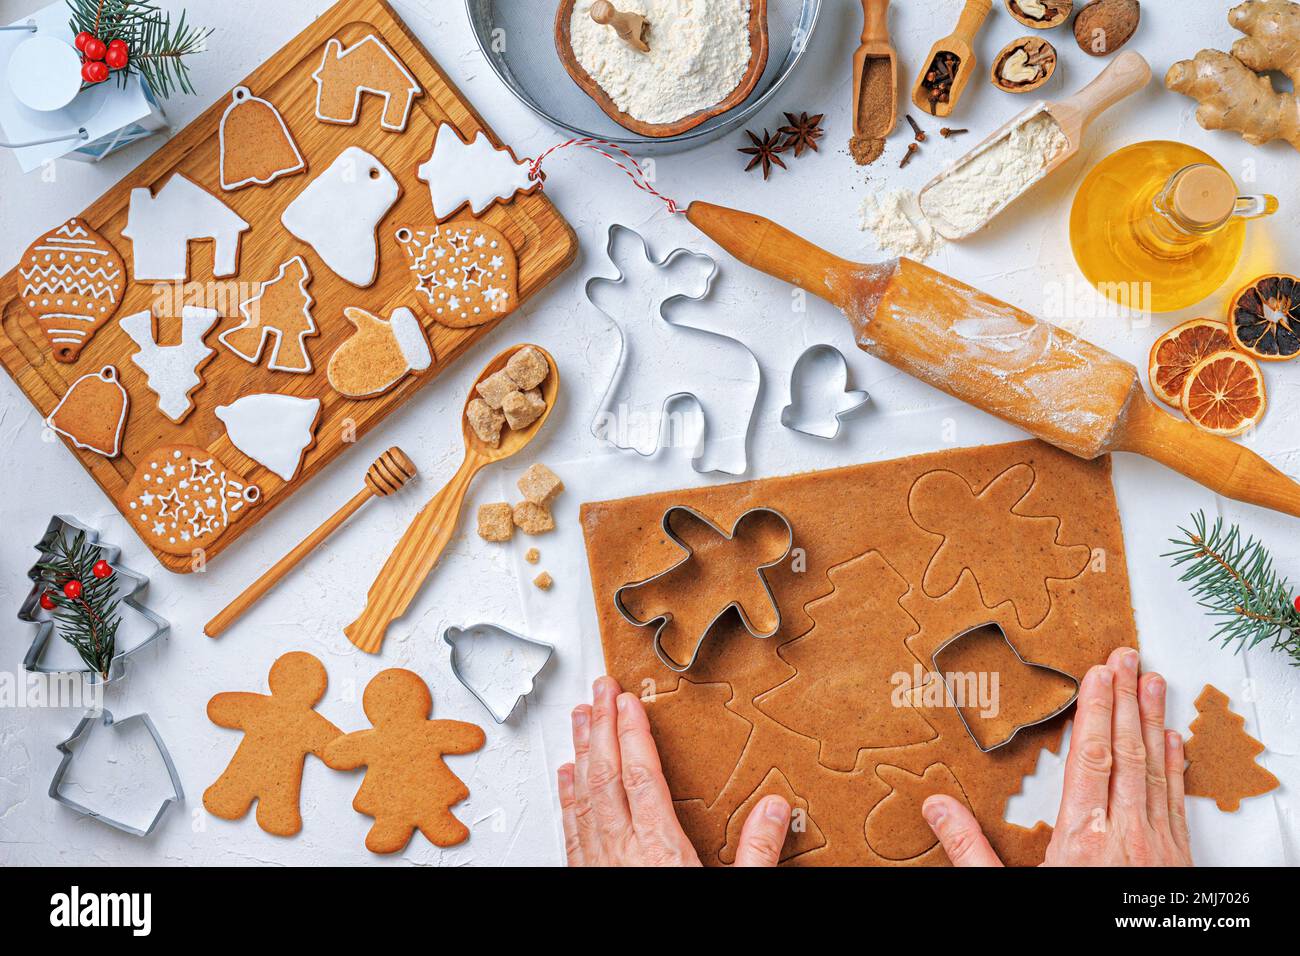 Weihnachtliches Lebkuchen in unterschiedlicher Form mit Zutaten für Lebkuchen und den Händen einer Bäckerin, Draufsicht, flach liegend Stockfoto